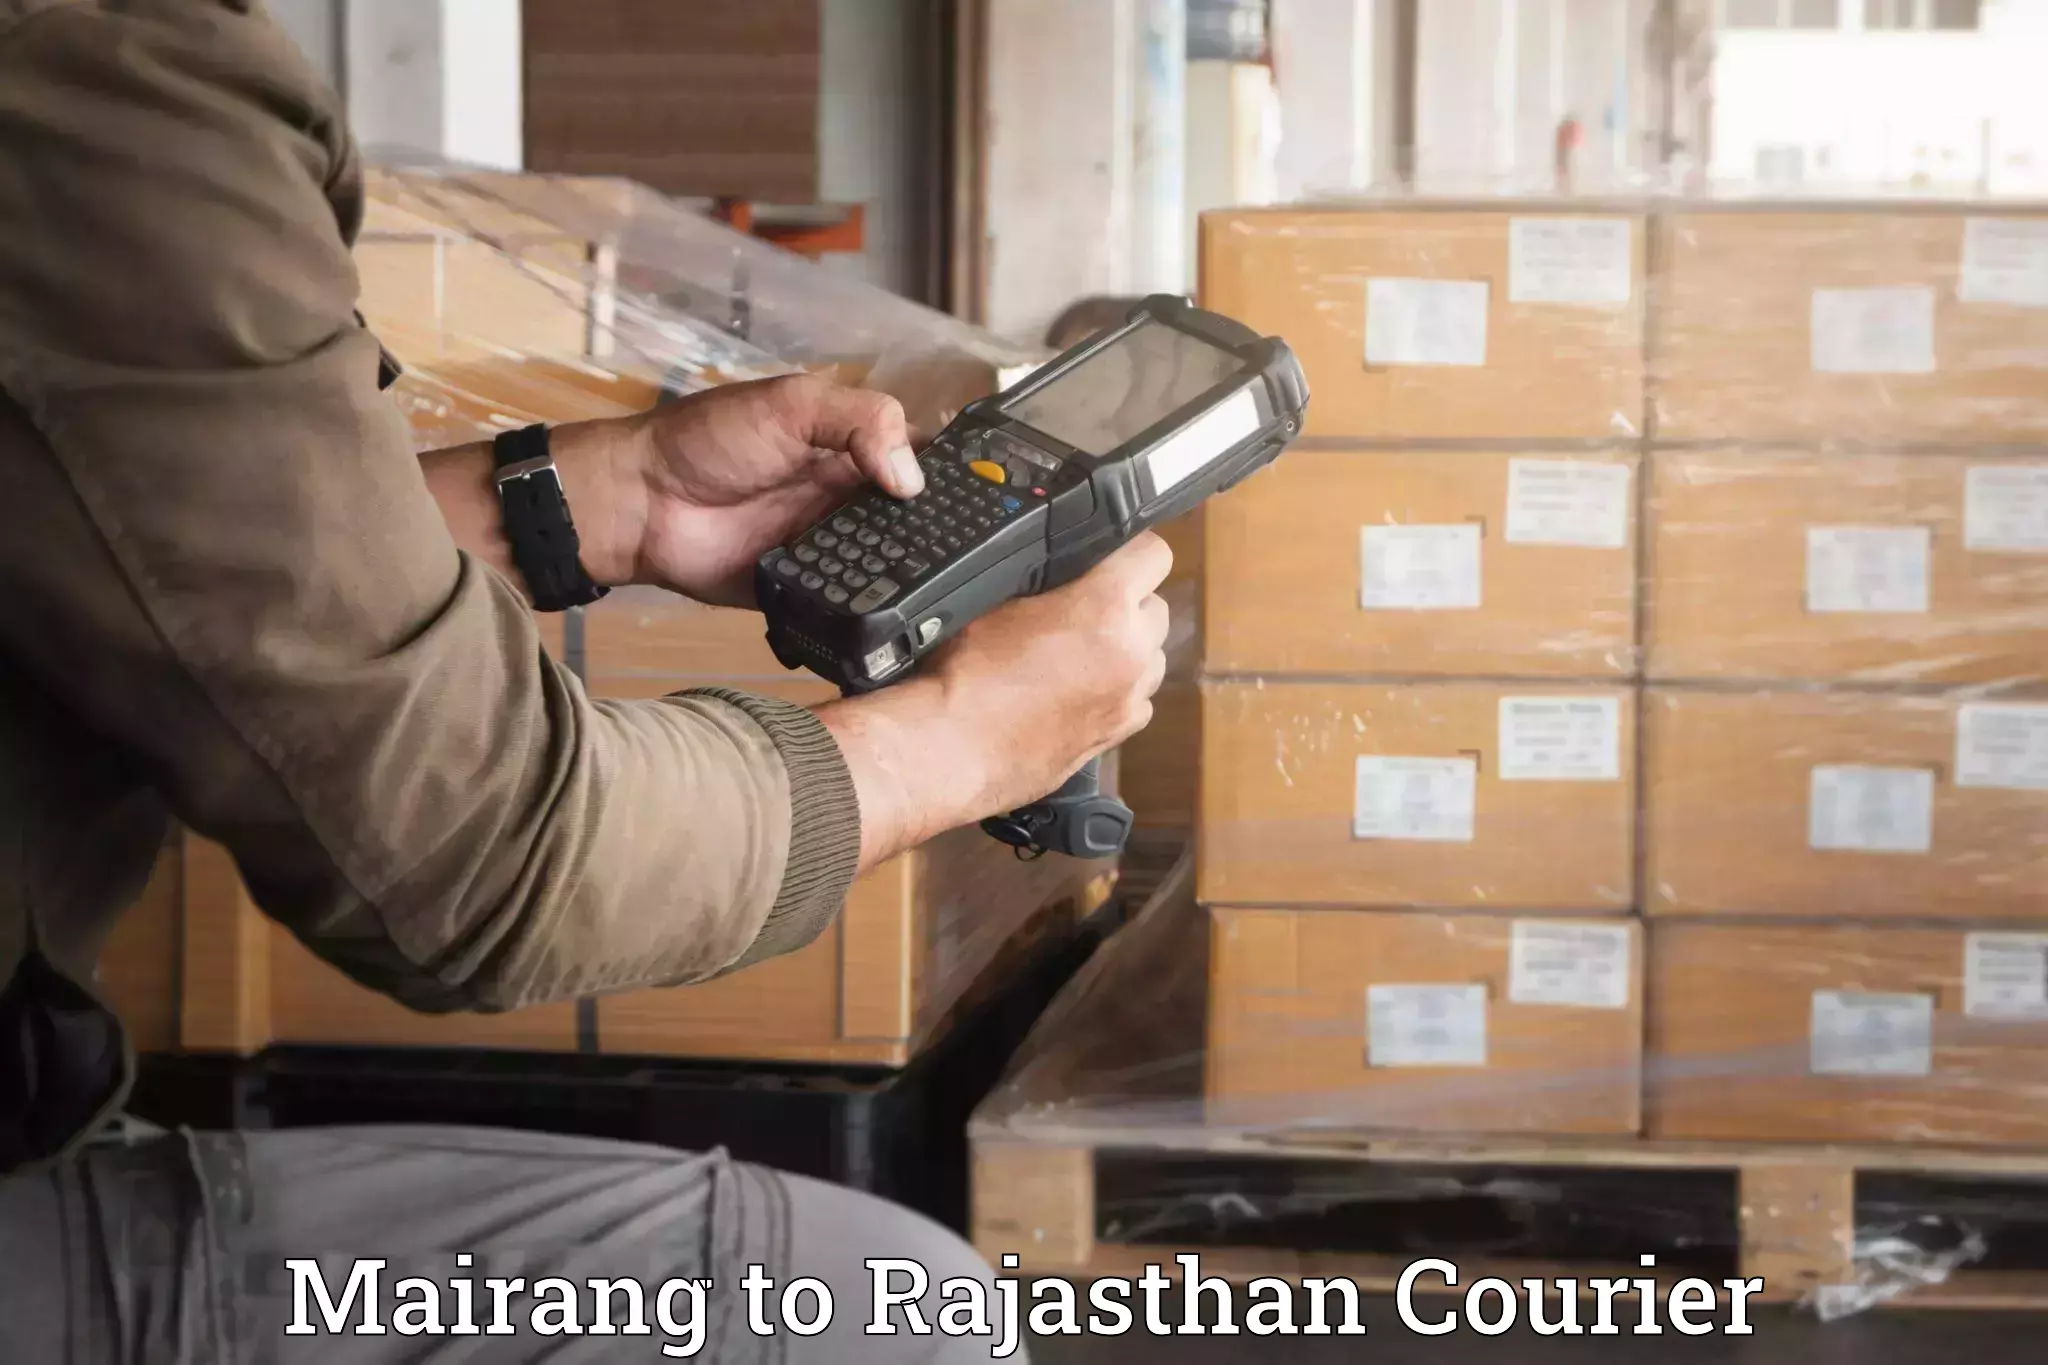 Professional packing services Mairang to Nagar